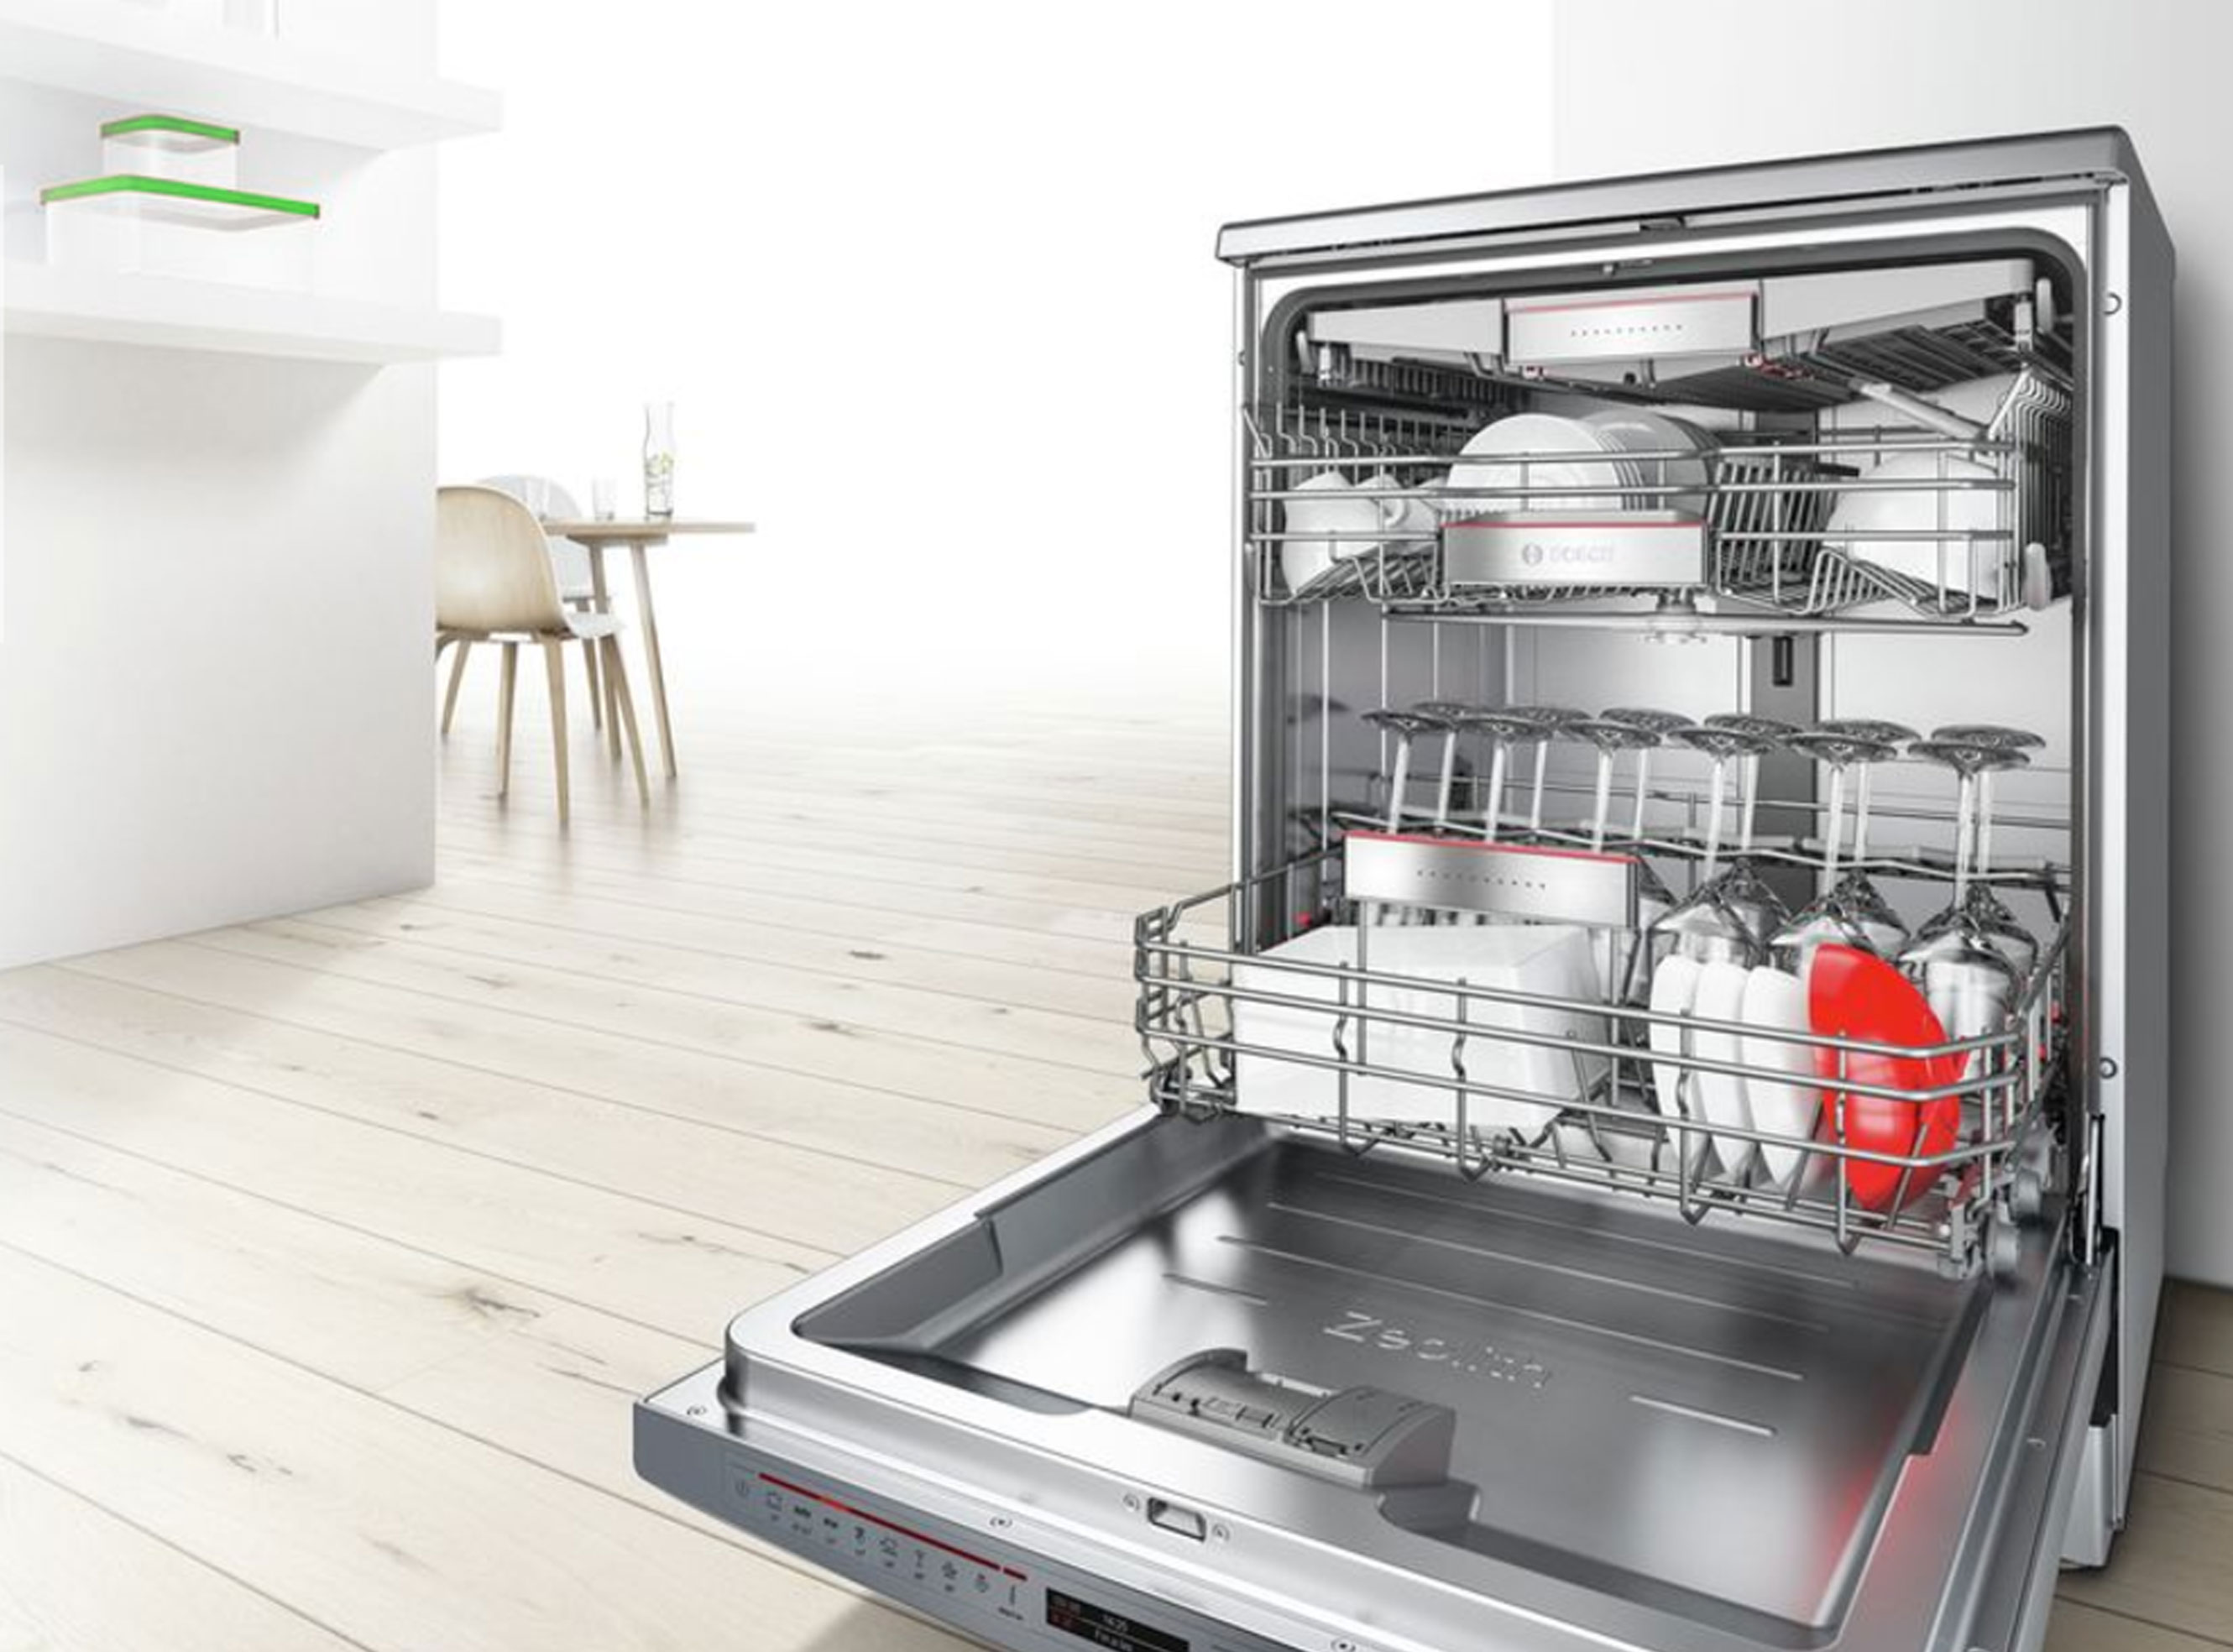 Descubre todas las características de los lavavajillas Bosch antes de  hacerte con el tuyo - Milar Tendencias de electrodomésticos